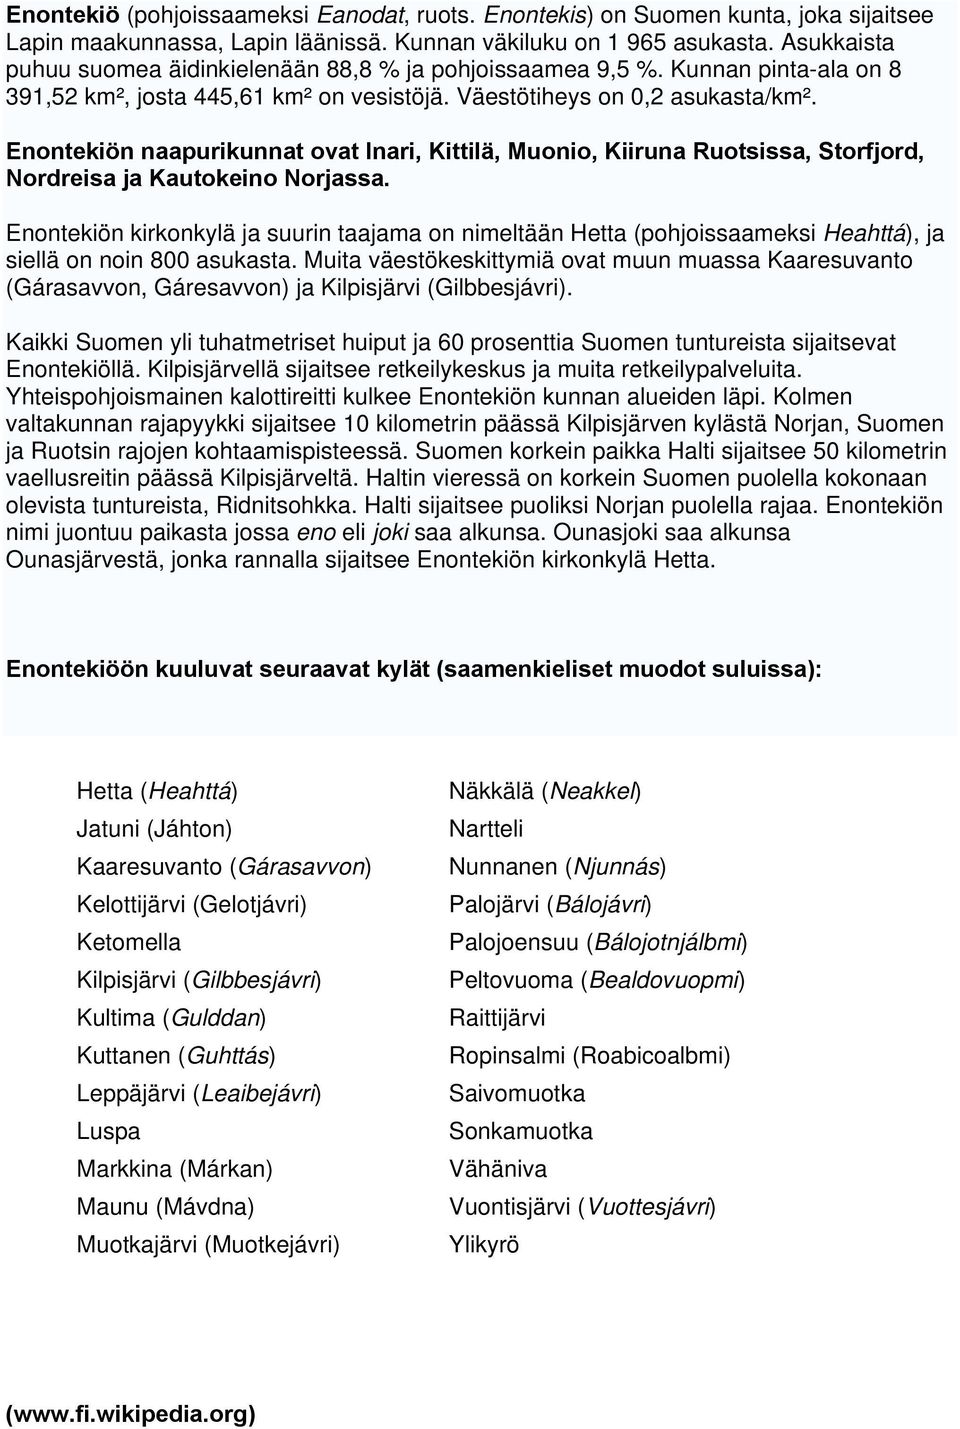 Enontekiön naapurikunnat ovat Inari, Kittilä, Muonio, Kiiruna Ruotsissa, Storfjord, Nordreisa ja Kautokeino Norjassa.